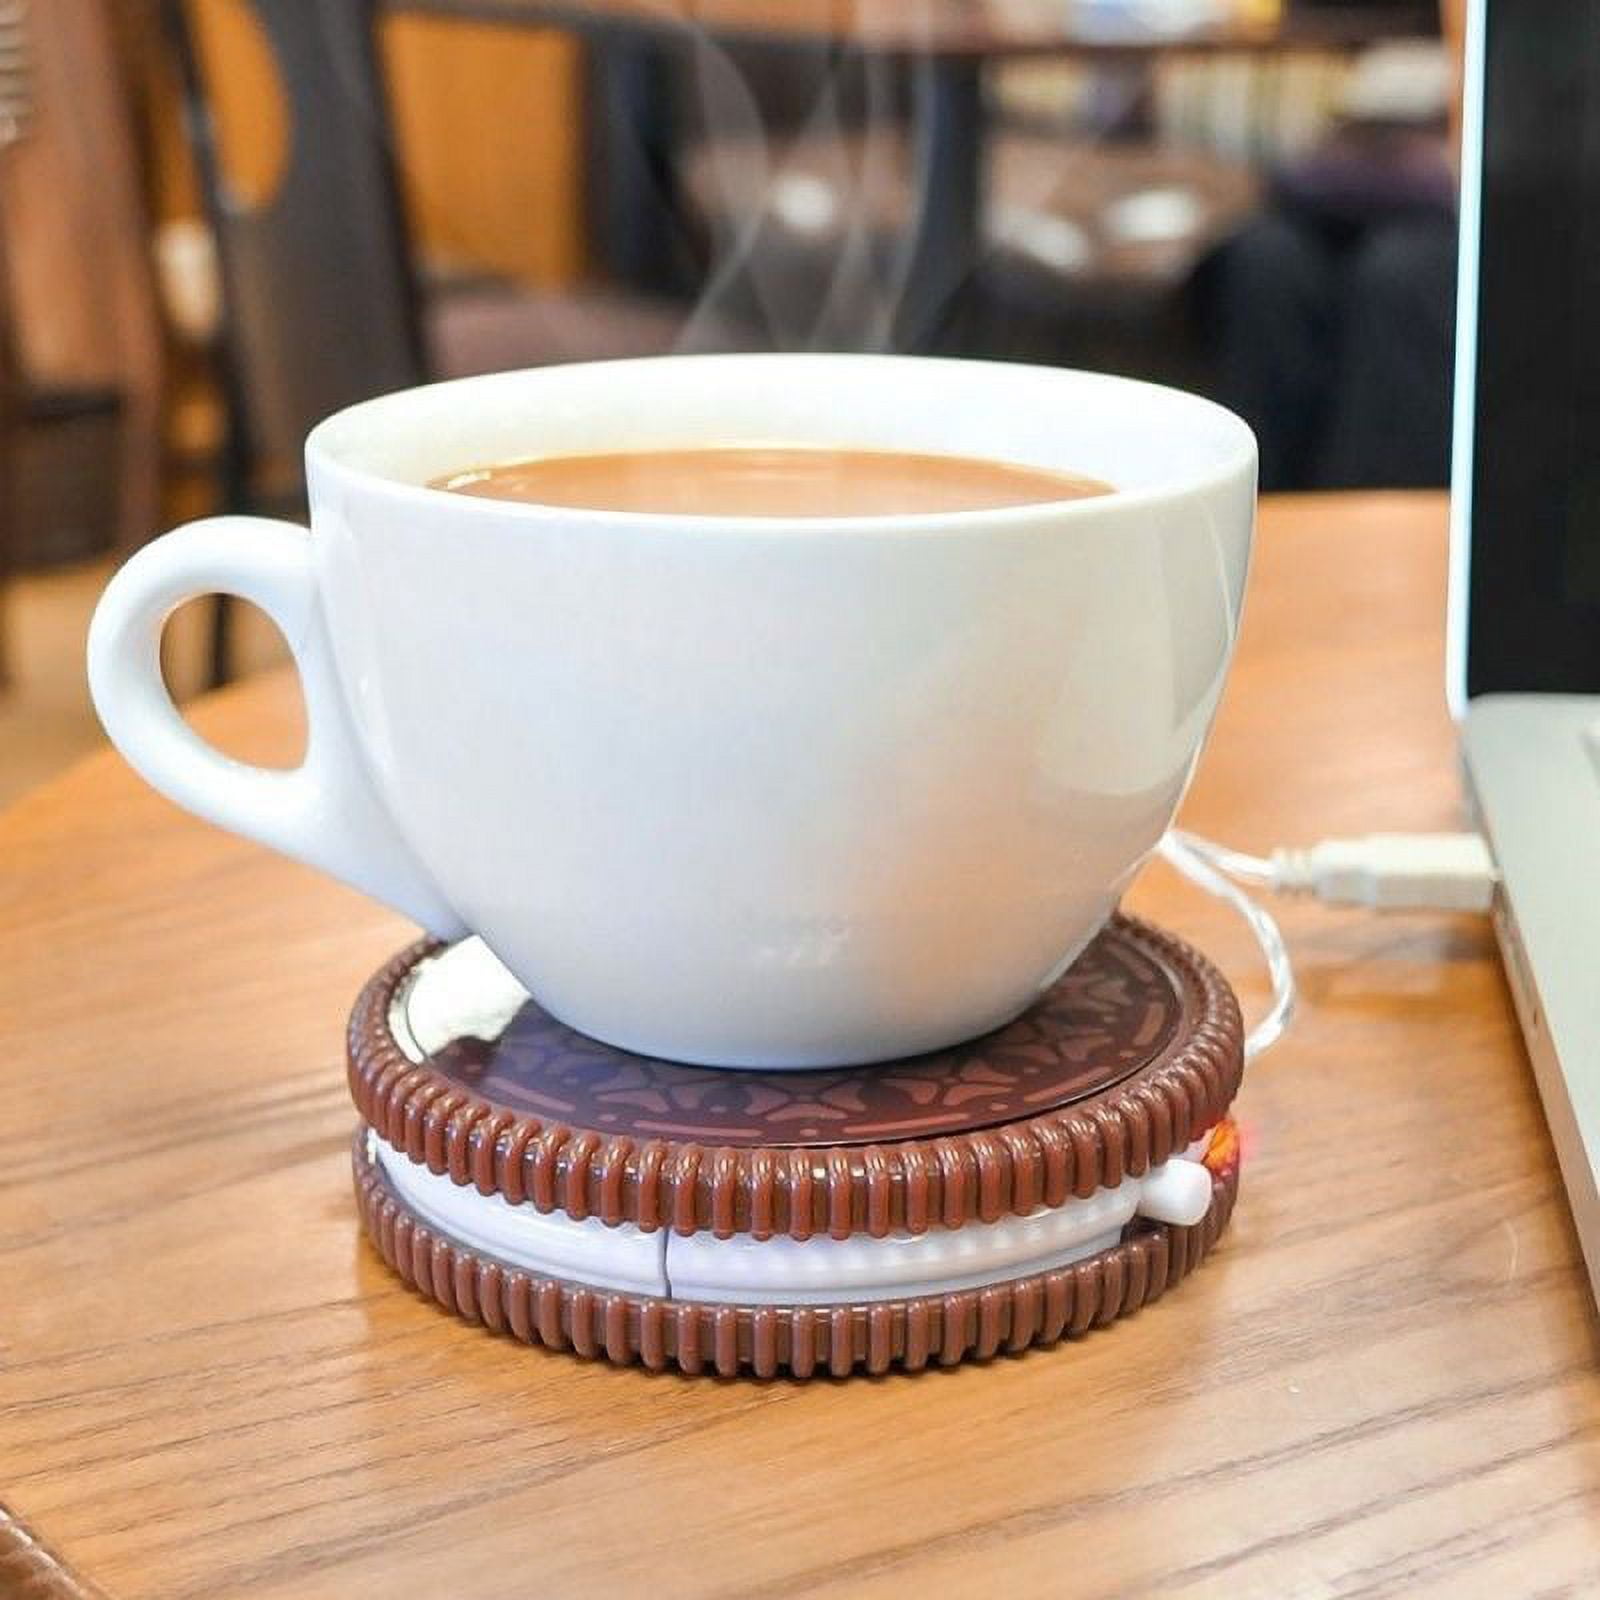 misby coffee warmer review｜TikTok Search